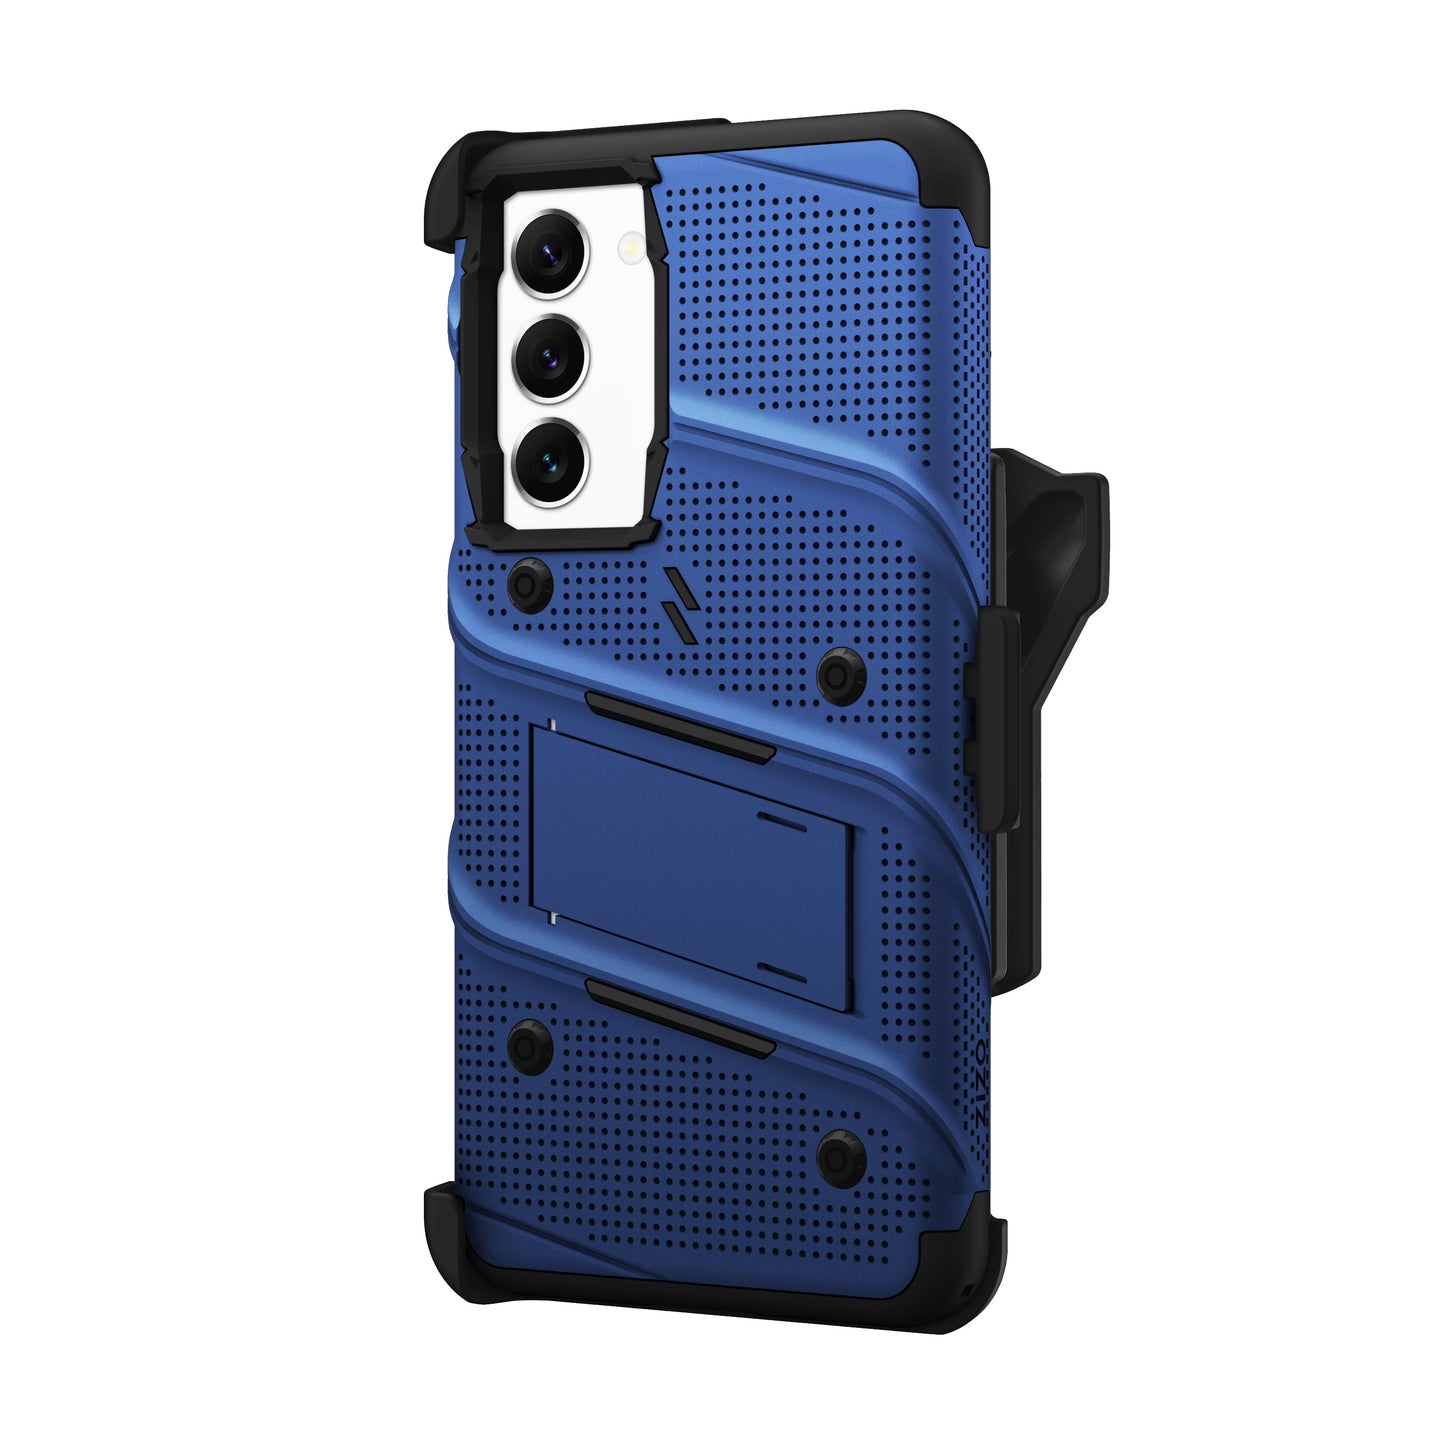 ZIZO BOLT Bundle Galaxy S24 Plus Case - Blue